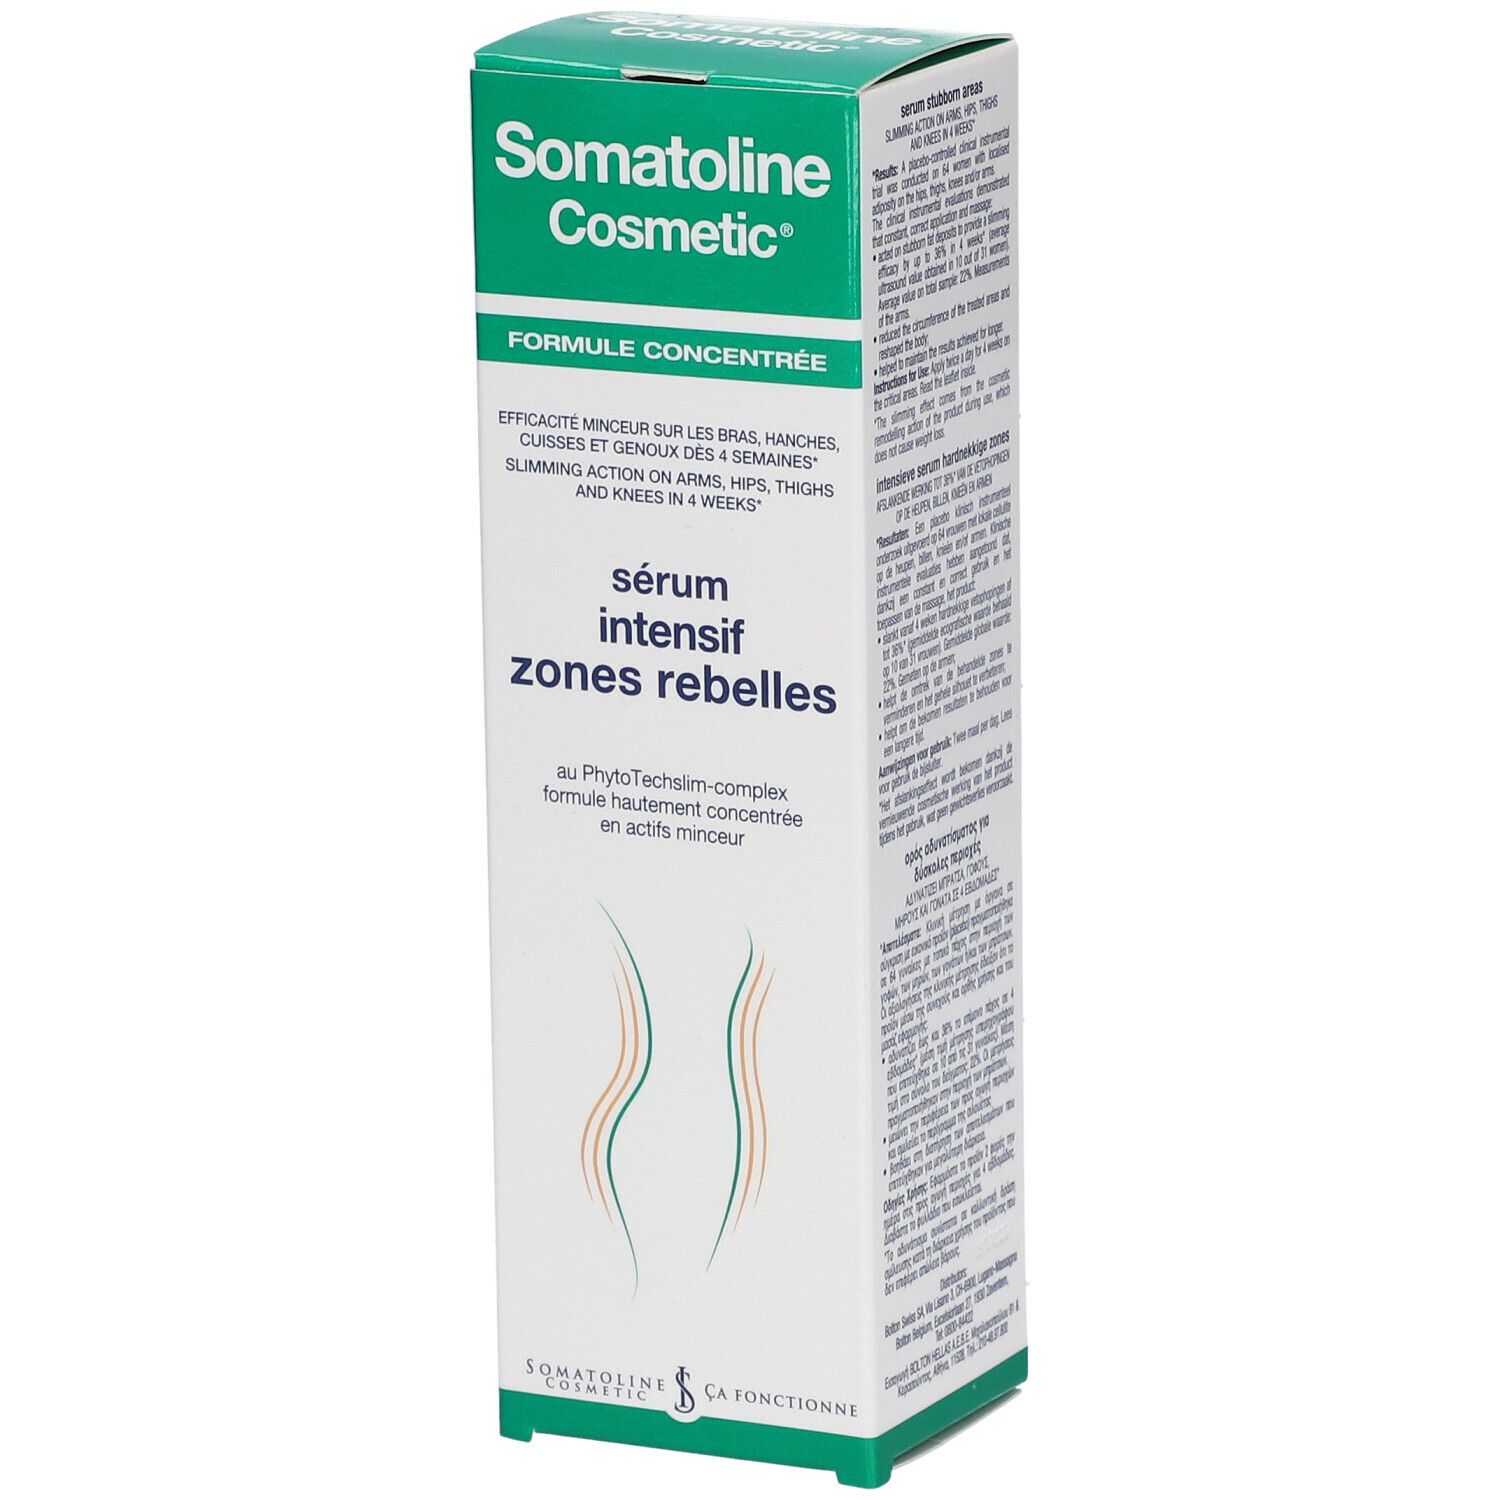 Image of Somatoline Comsmetic ® Intensiv Serum bei Problemzonen